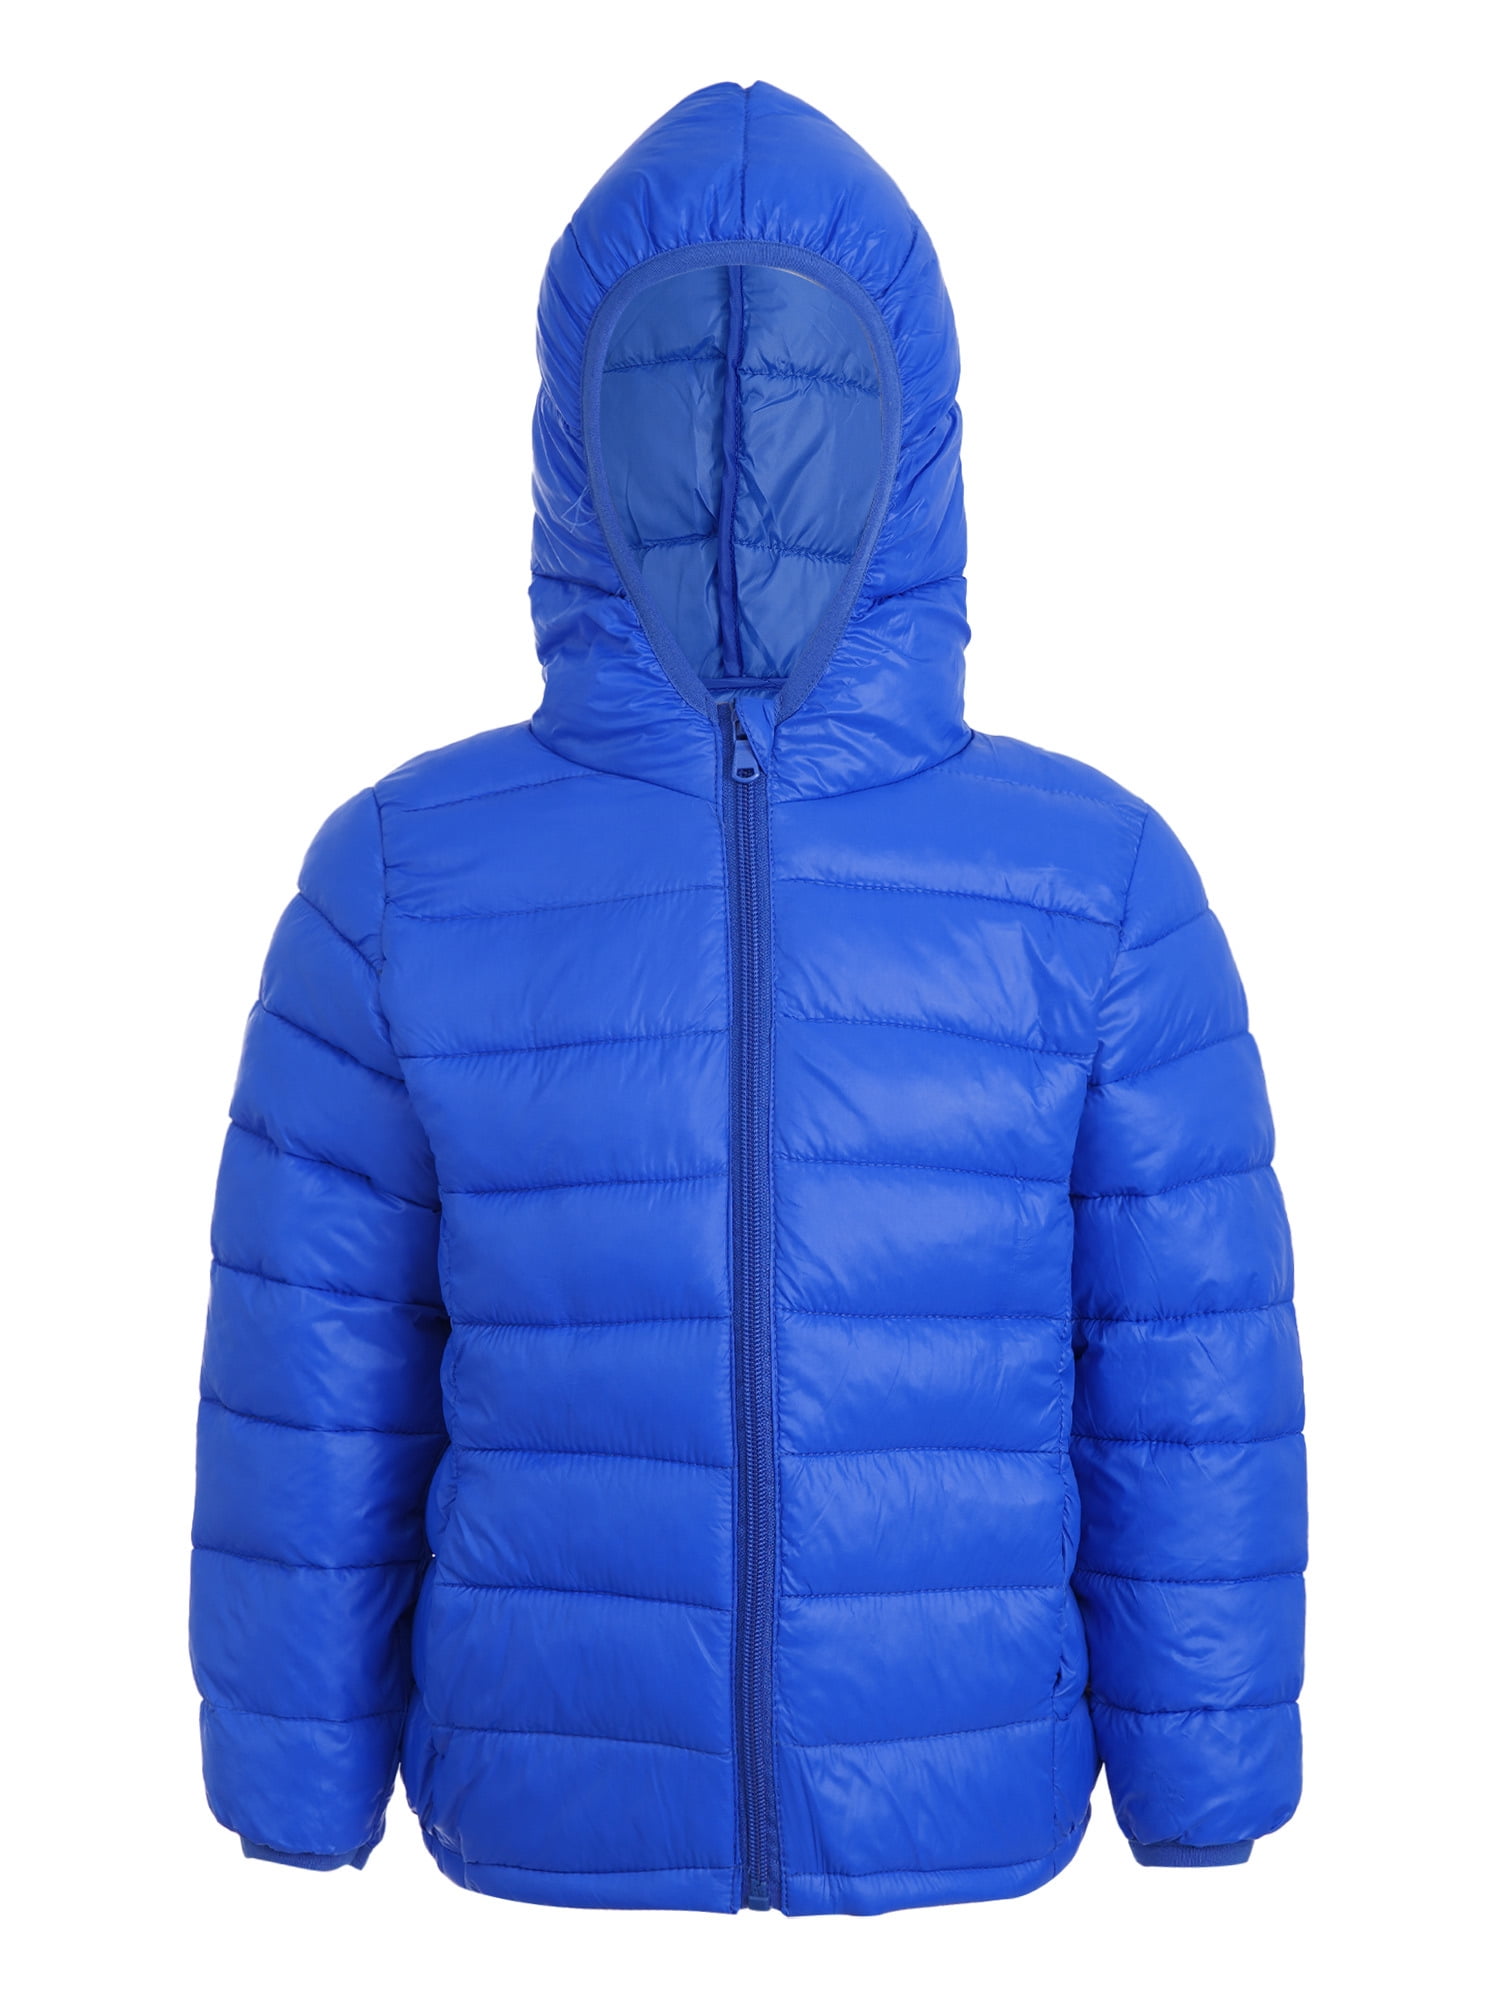 MSemis Puffer Jacket Winter Hooded Coat Lightweight Outwear for Kids ...